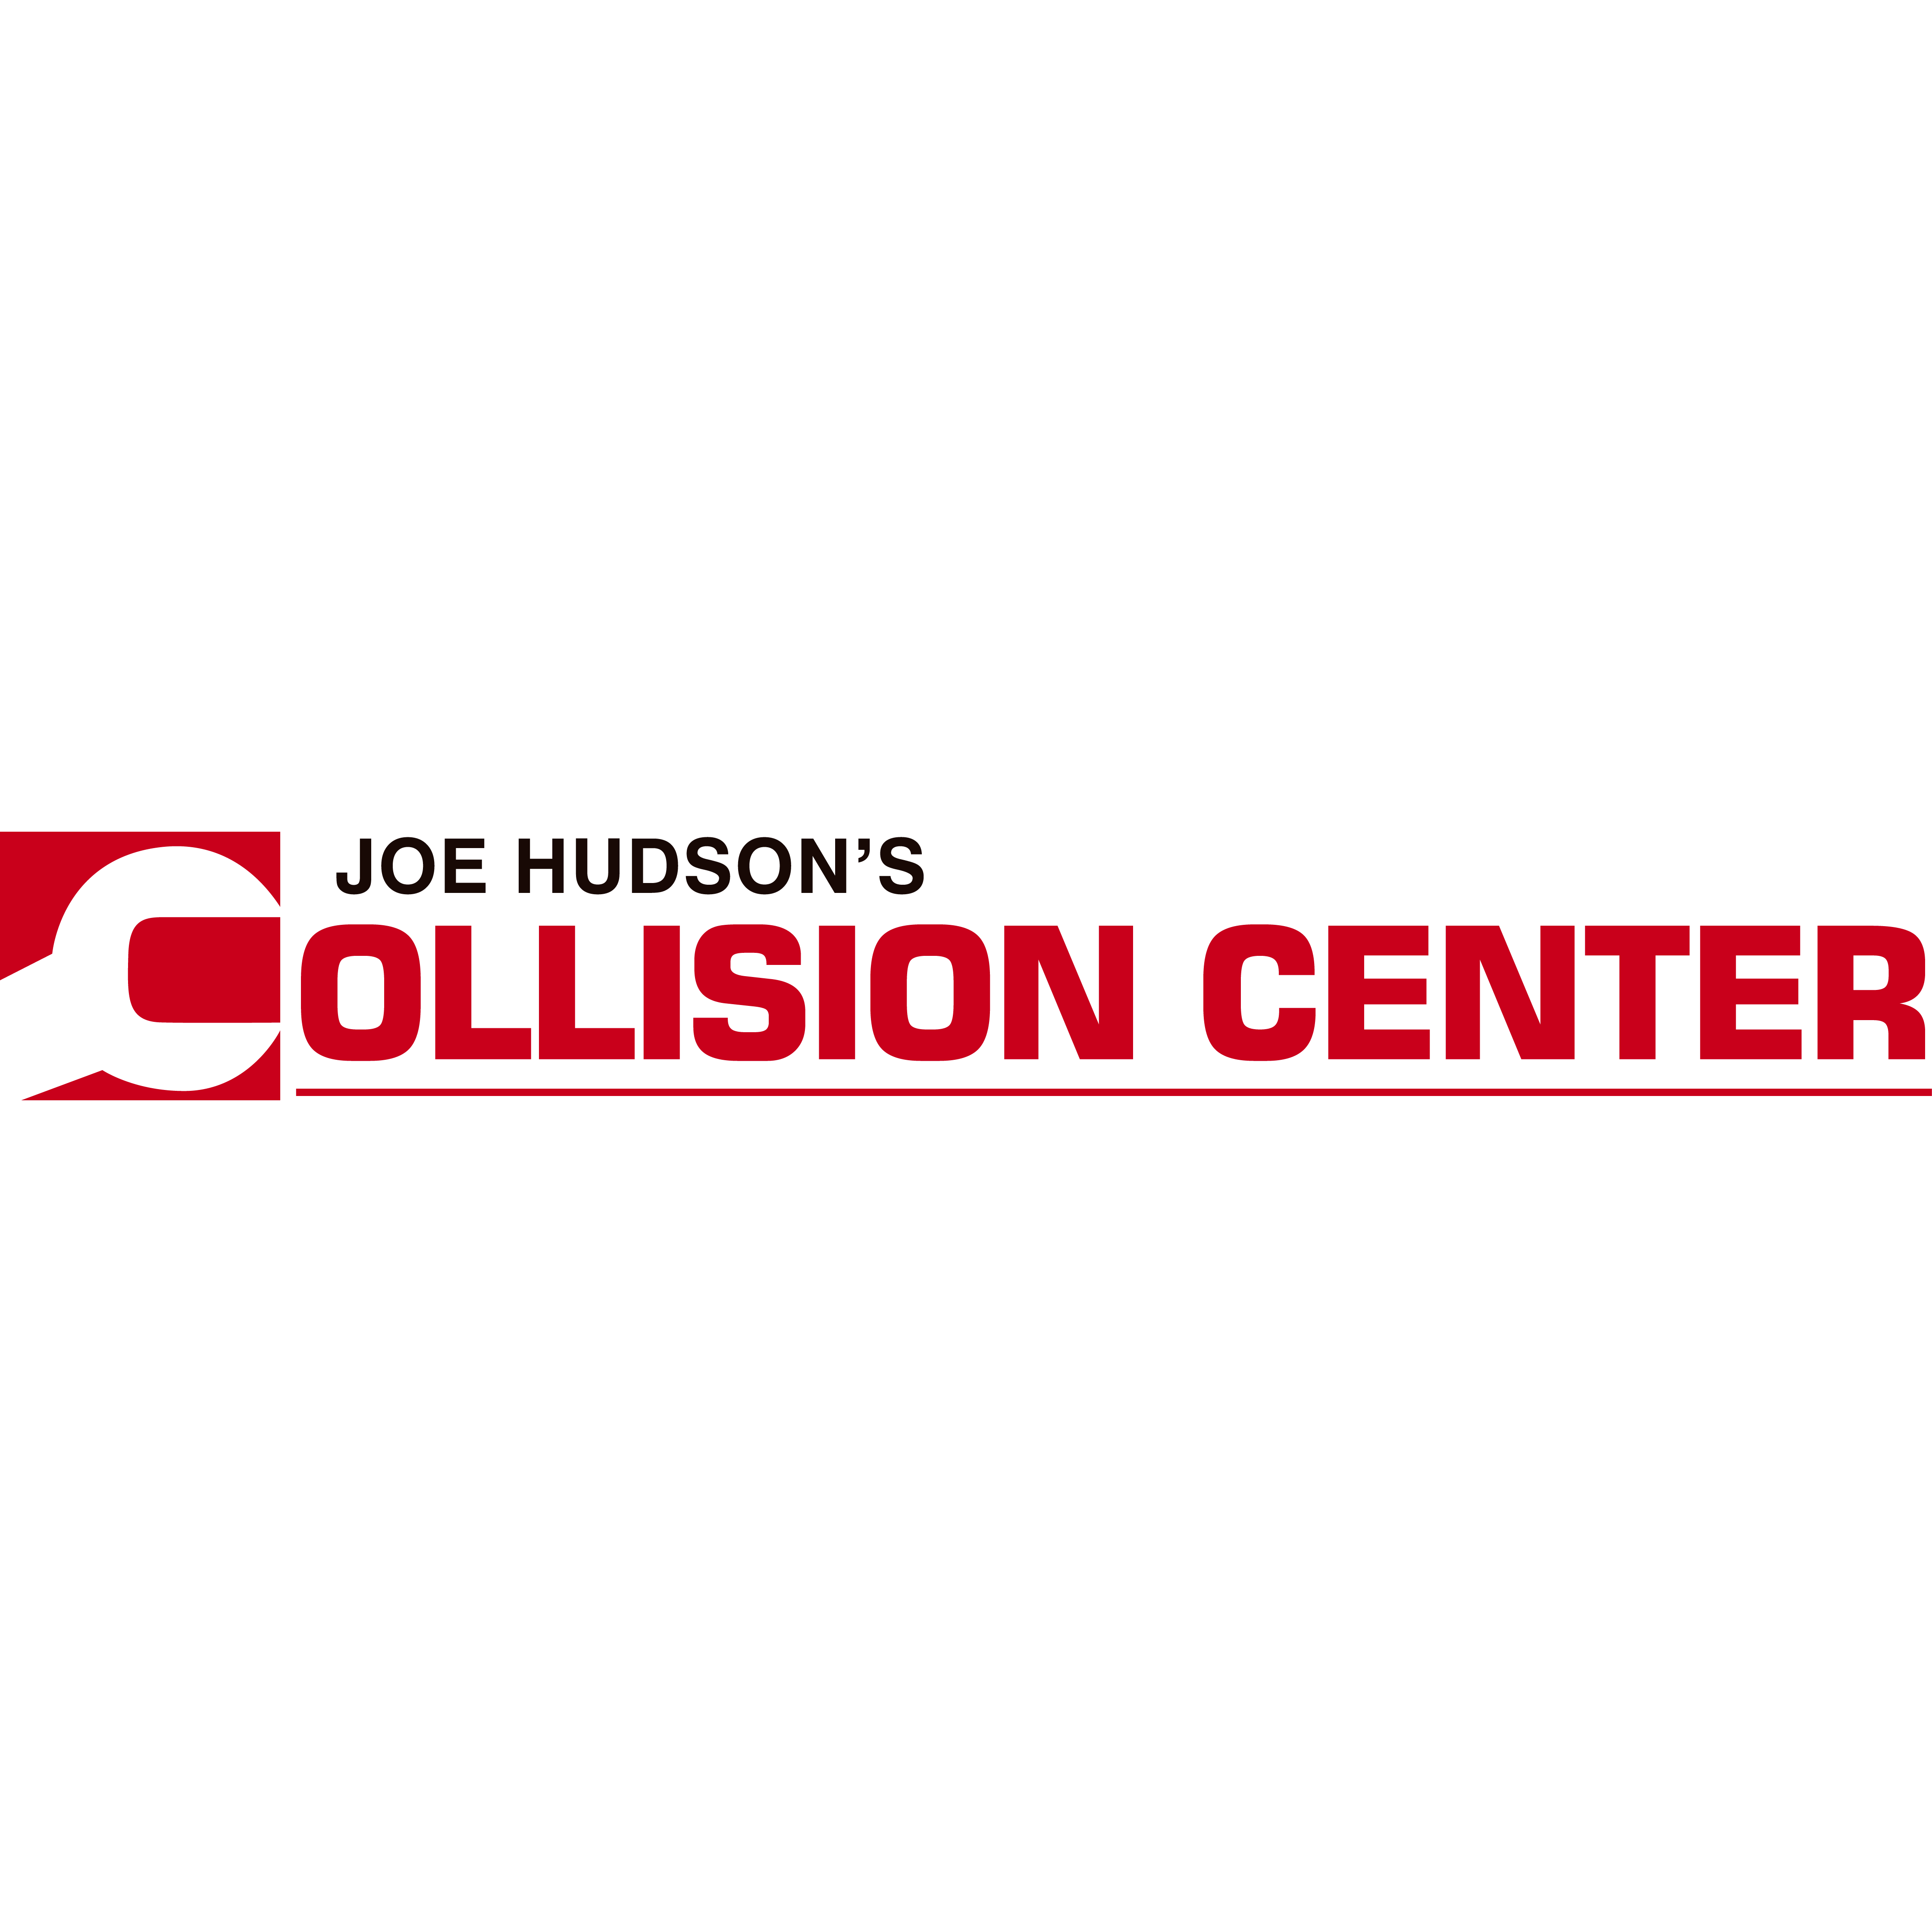 Joe Hudson's Collision Center - Irmo, SC 29063 - (803)781-7105 | ShowMeLocal.com